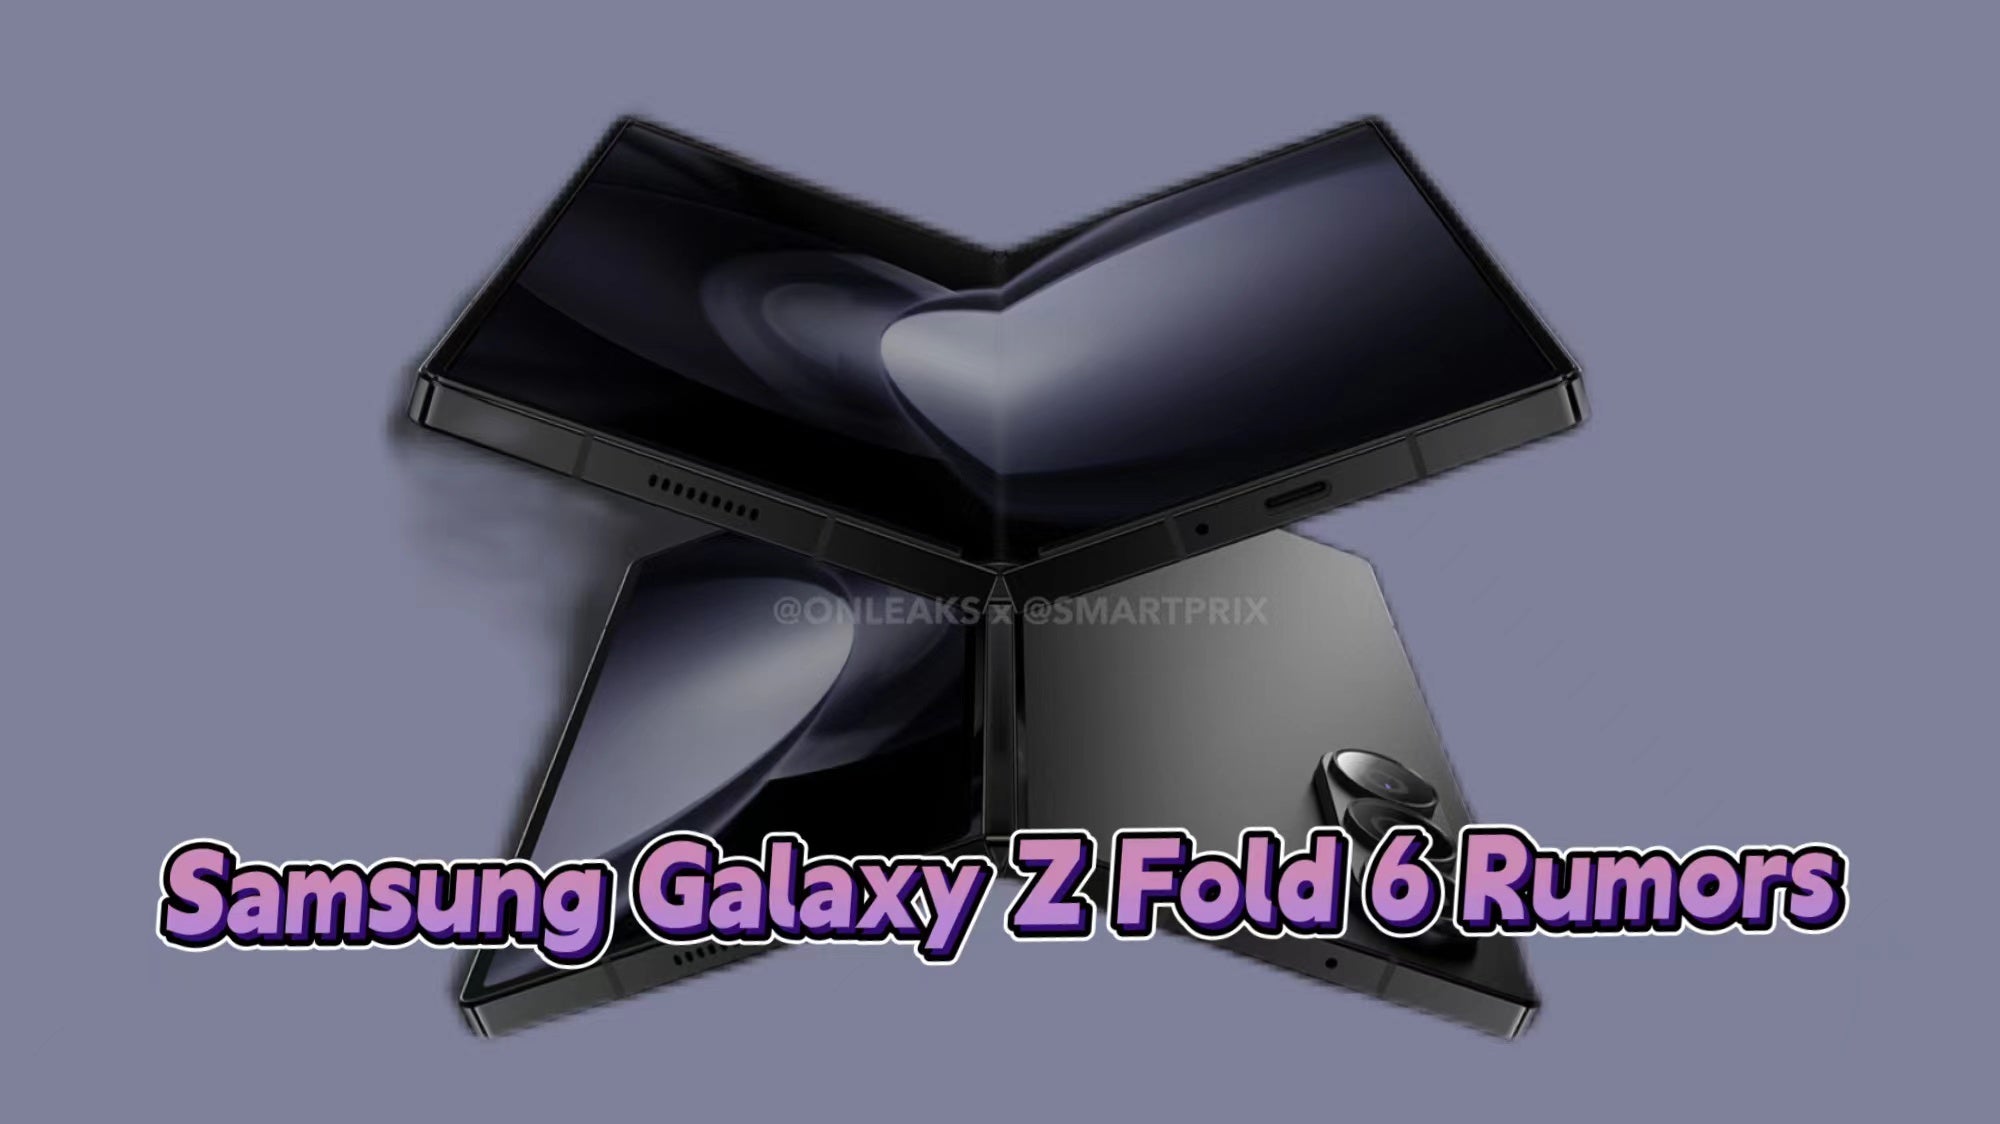 Samsung Galaxy Z Fold 6 Rumors and Predictions